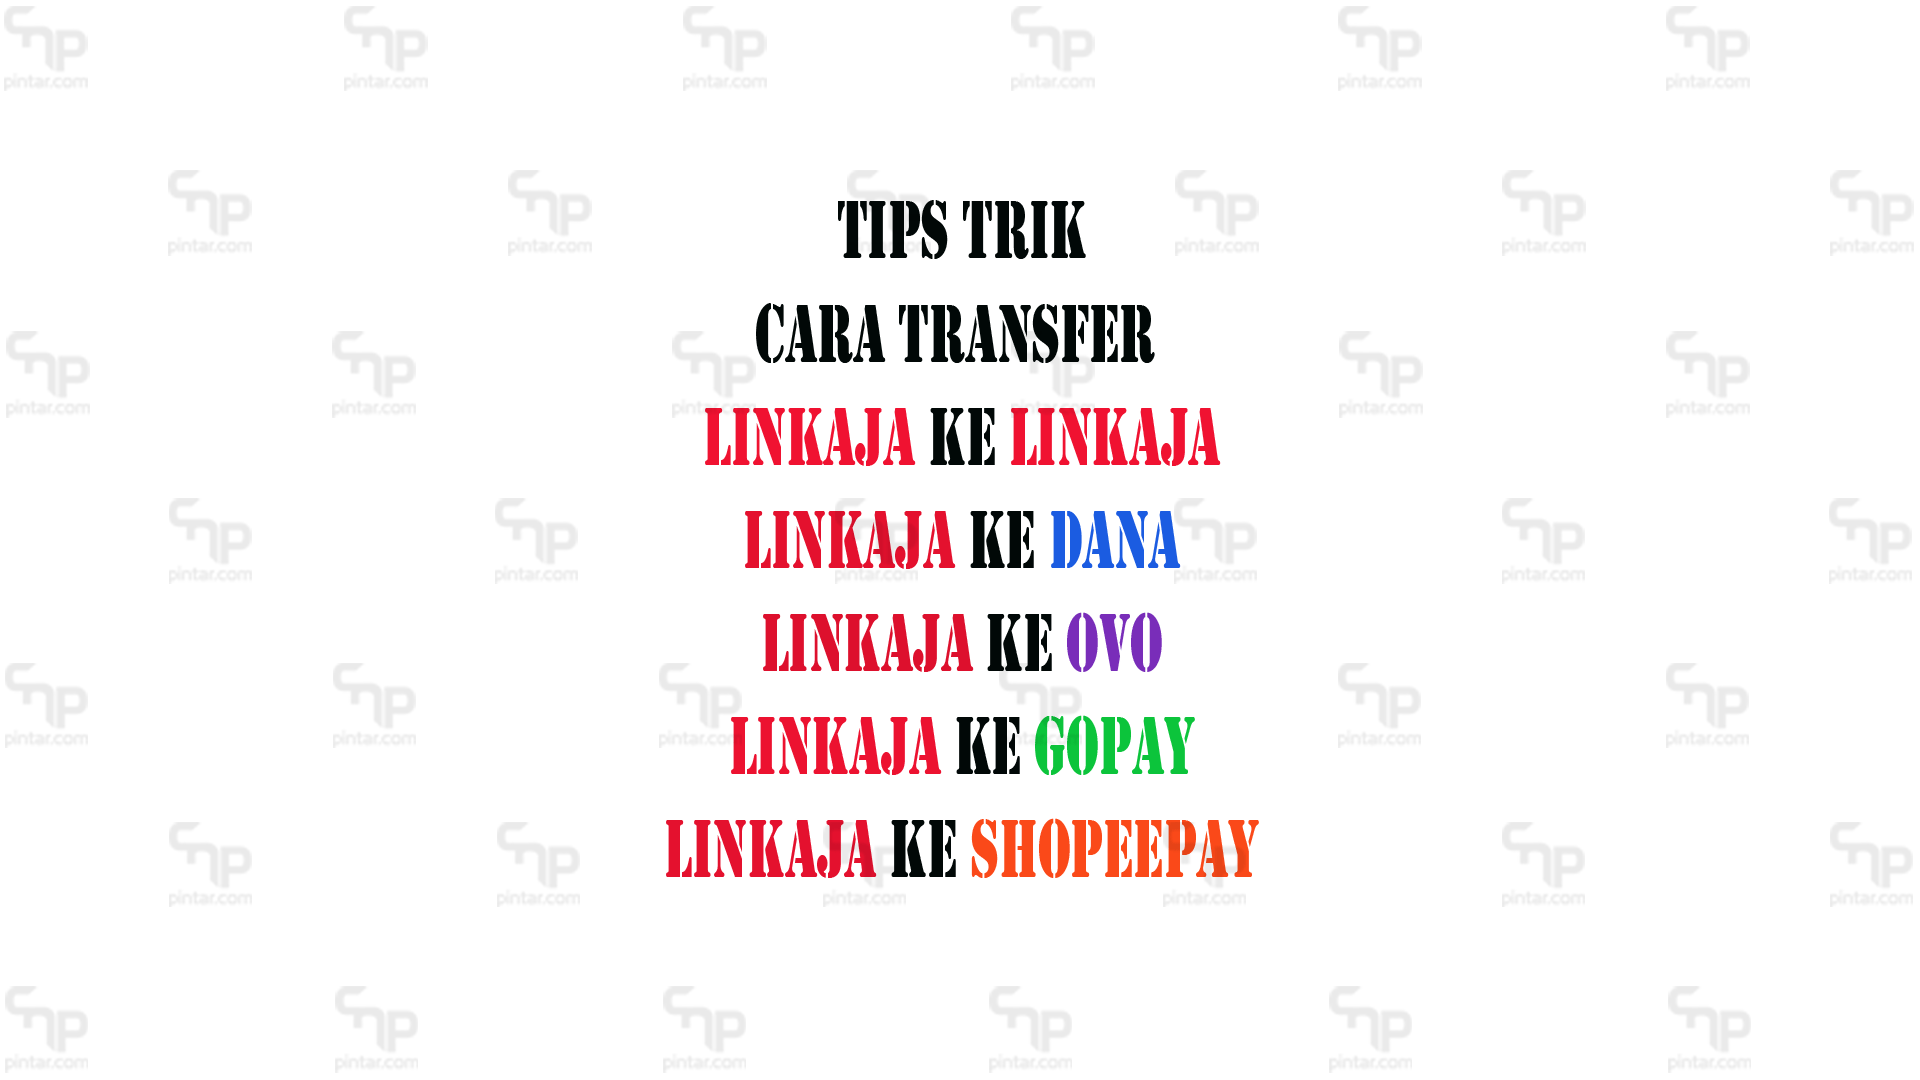 Cara transfer linkaja - Cara Transfer Linkaja Ke Linkaja & Ke Dana Shopeepay